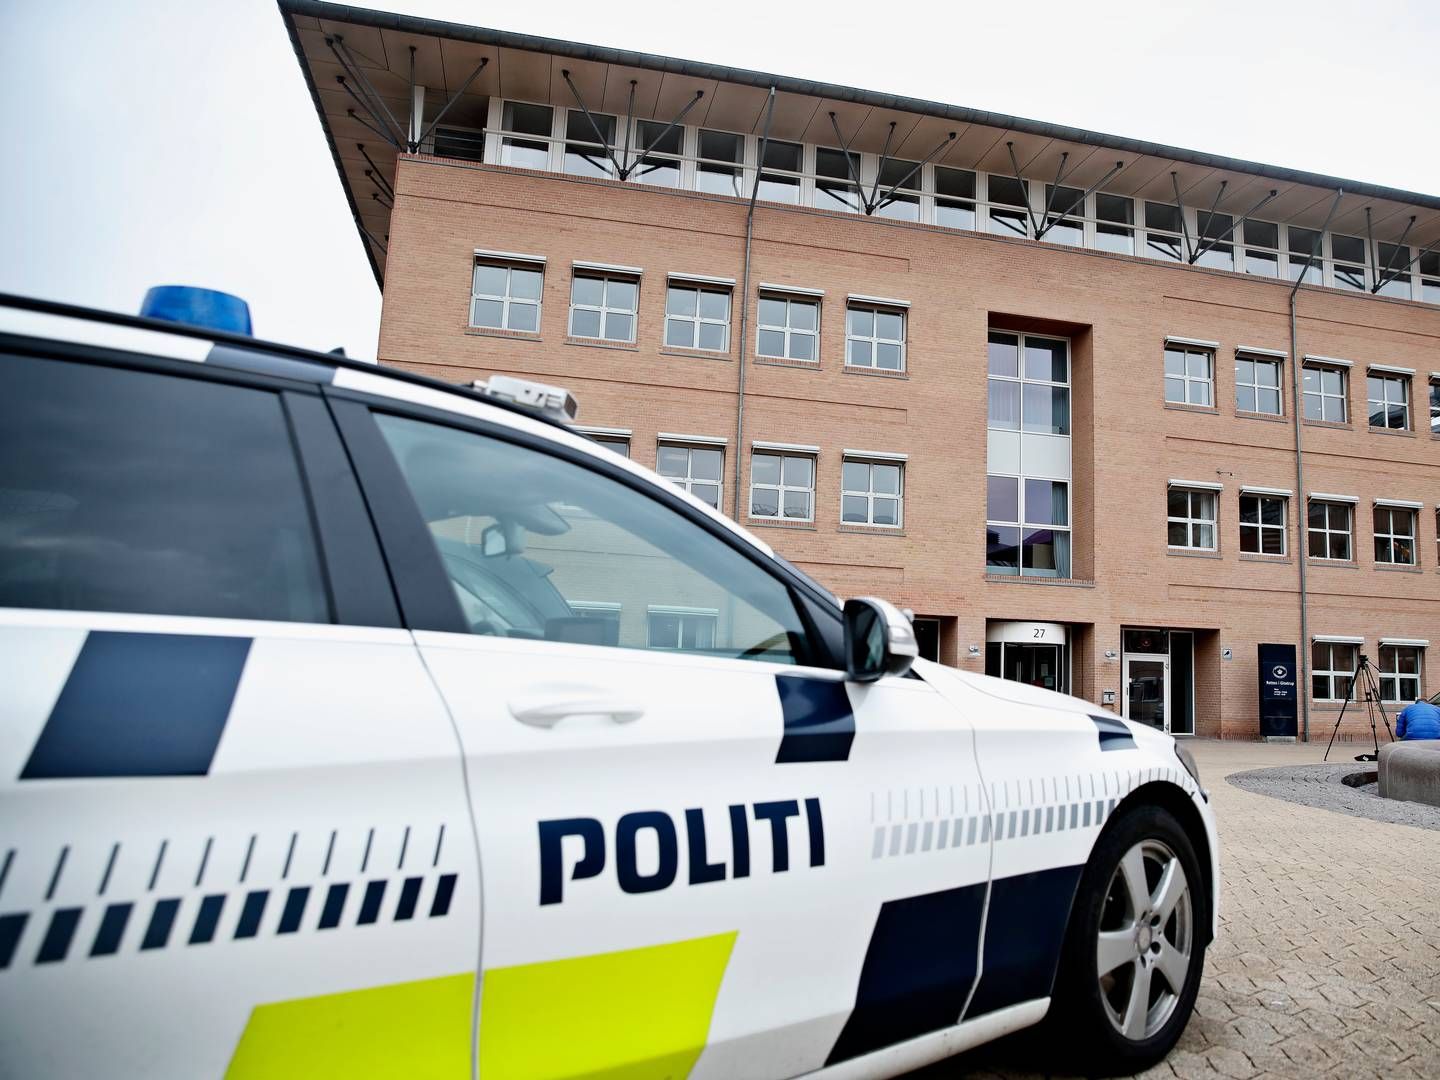 På grund af ventetider hos domstolene var der ikke blevet afholdt en retssag, bekræfter retten i Glostrup. | Foto: Jens Dresling